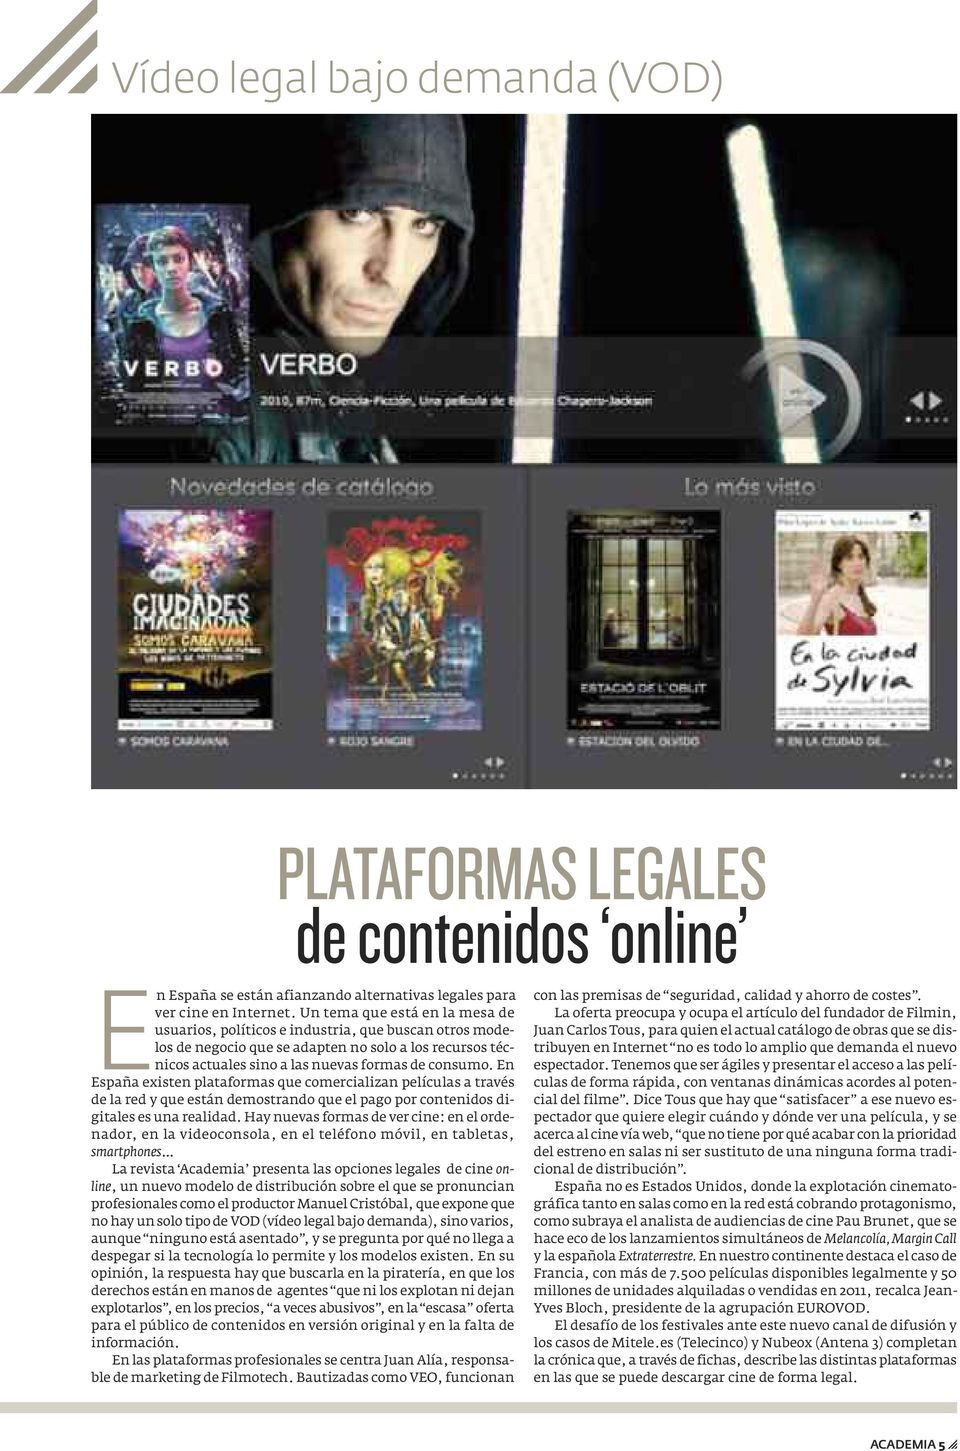 En España existen plataformas que comercializan películas a través de la red y que están demostrando que el pago por contenidos digitales es una realidad.